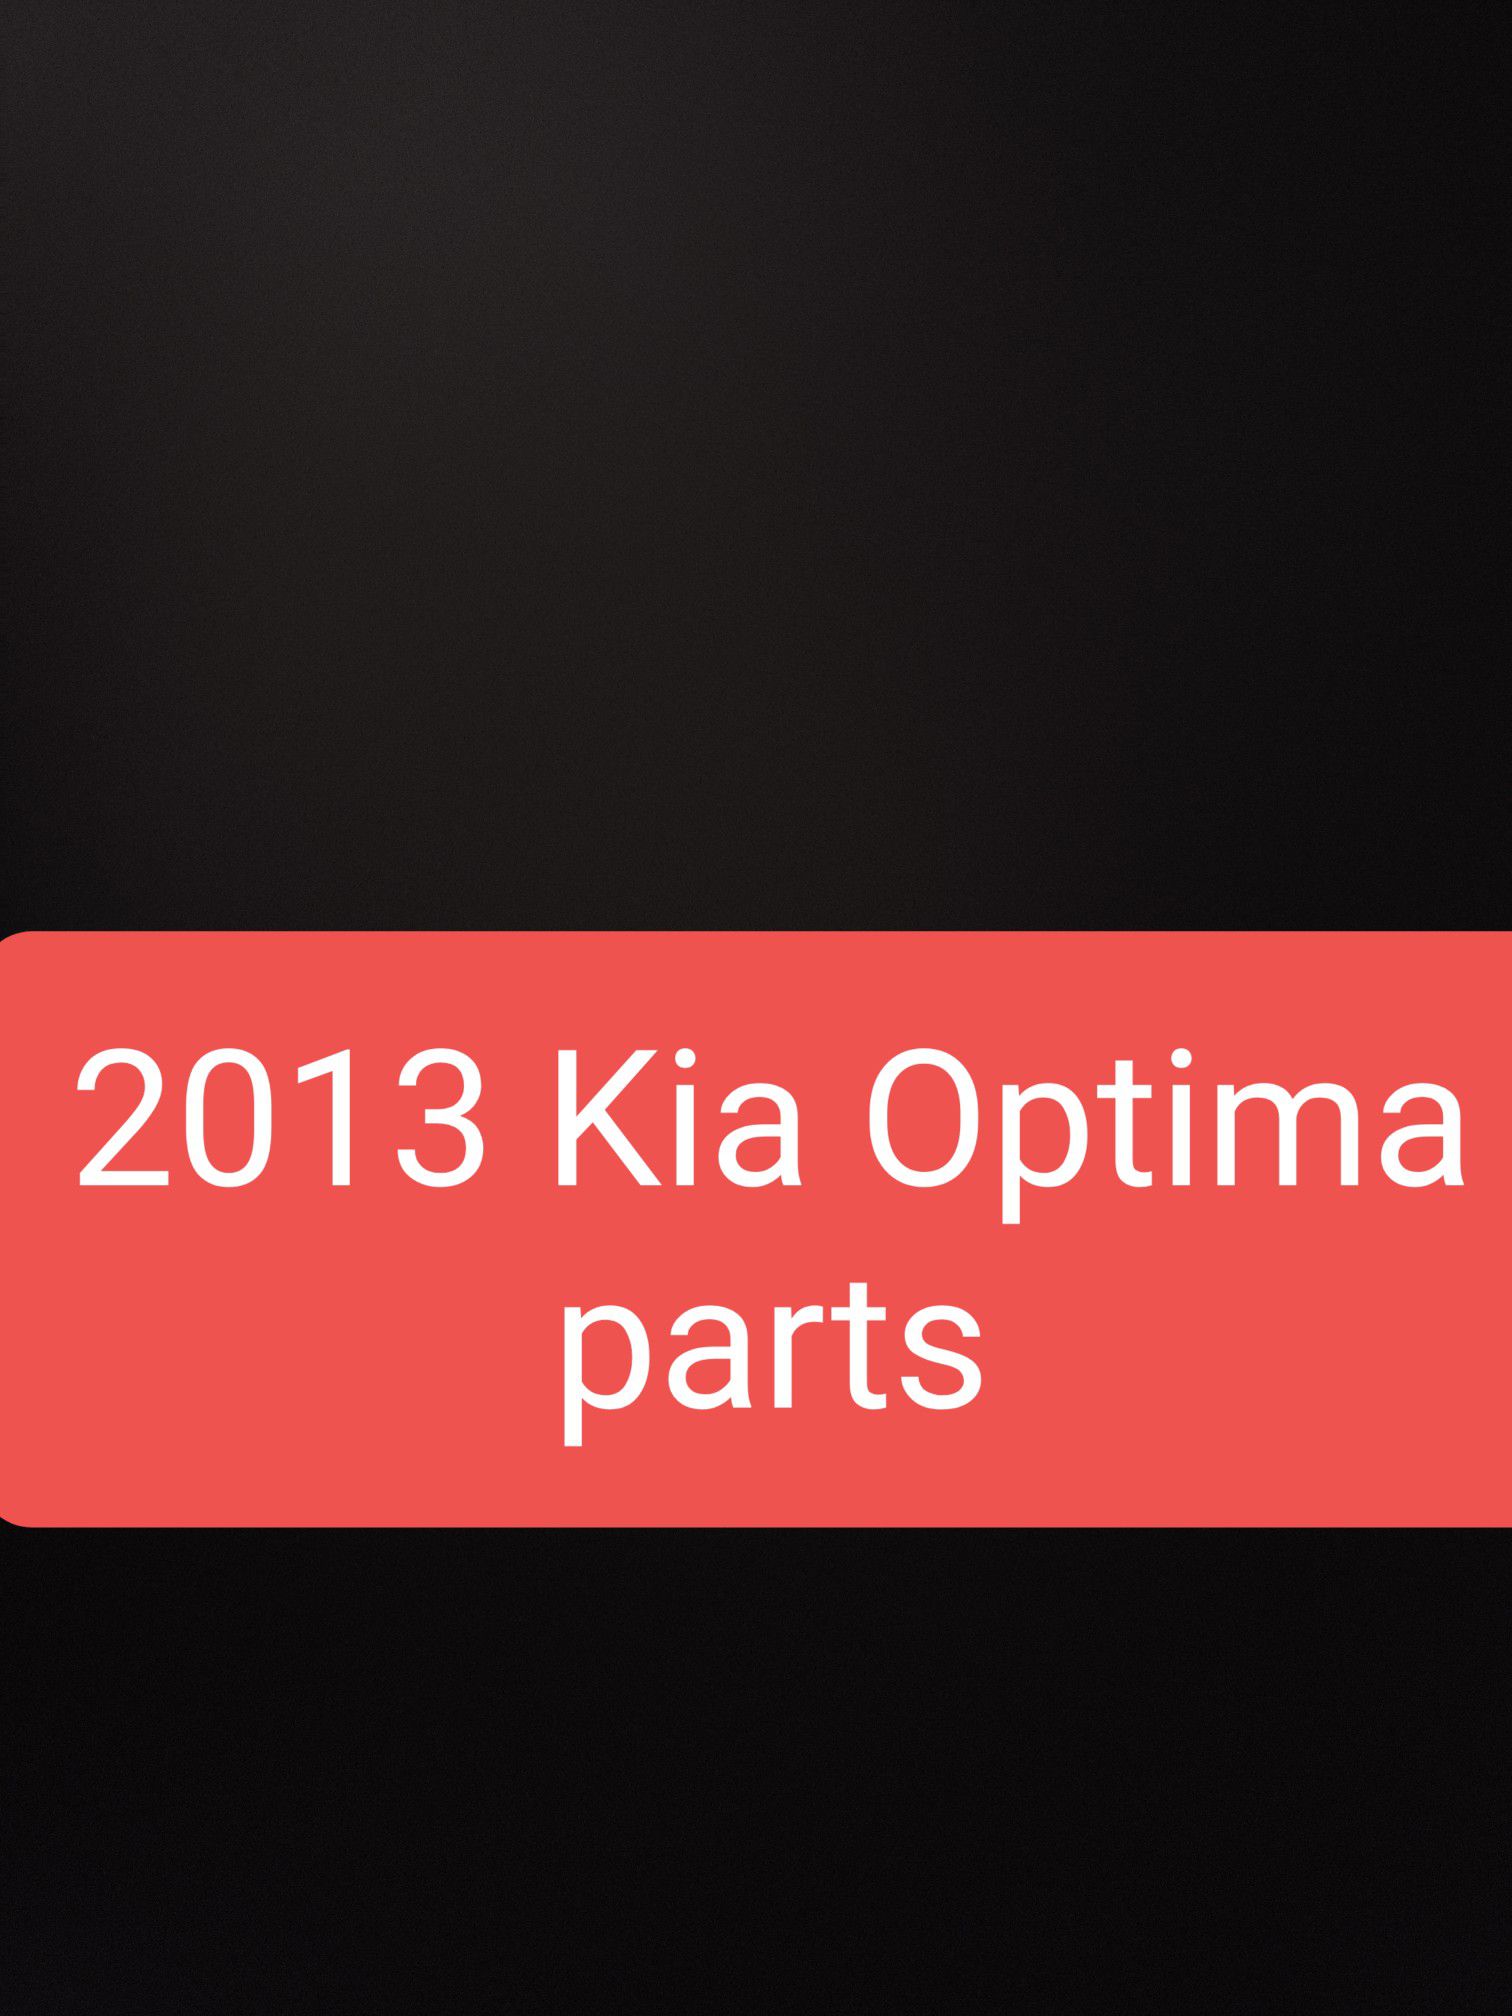 2013 Kia Optima parts